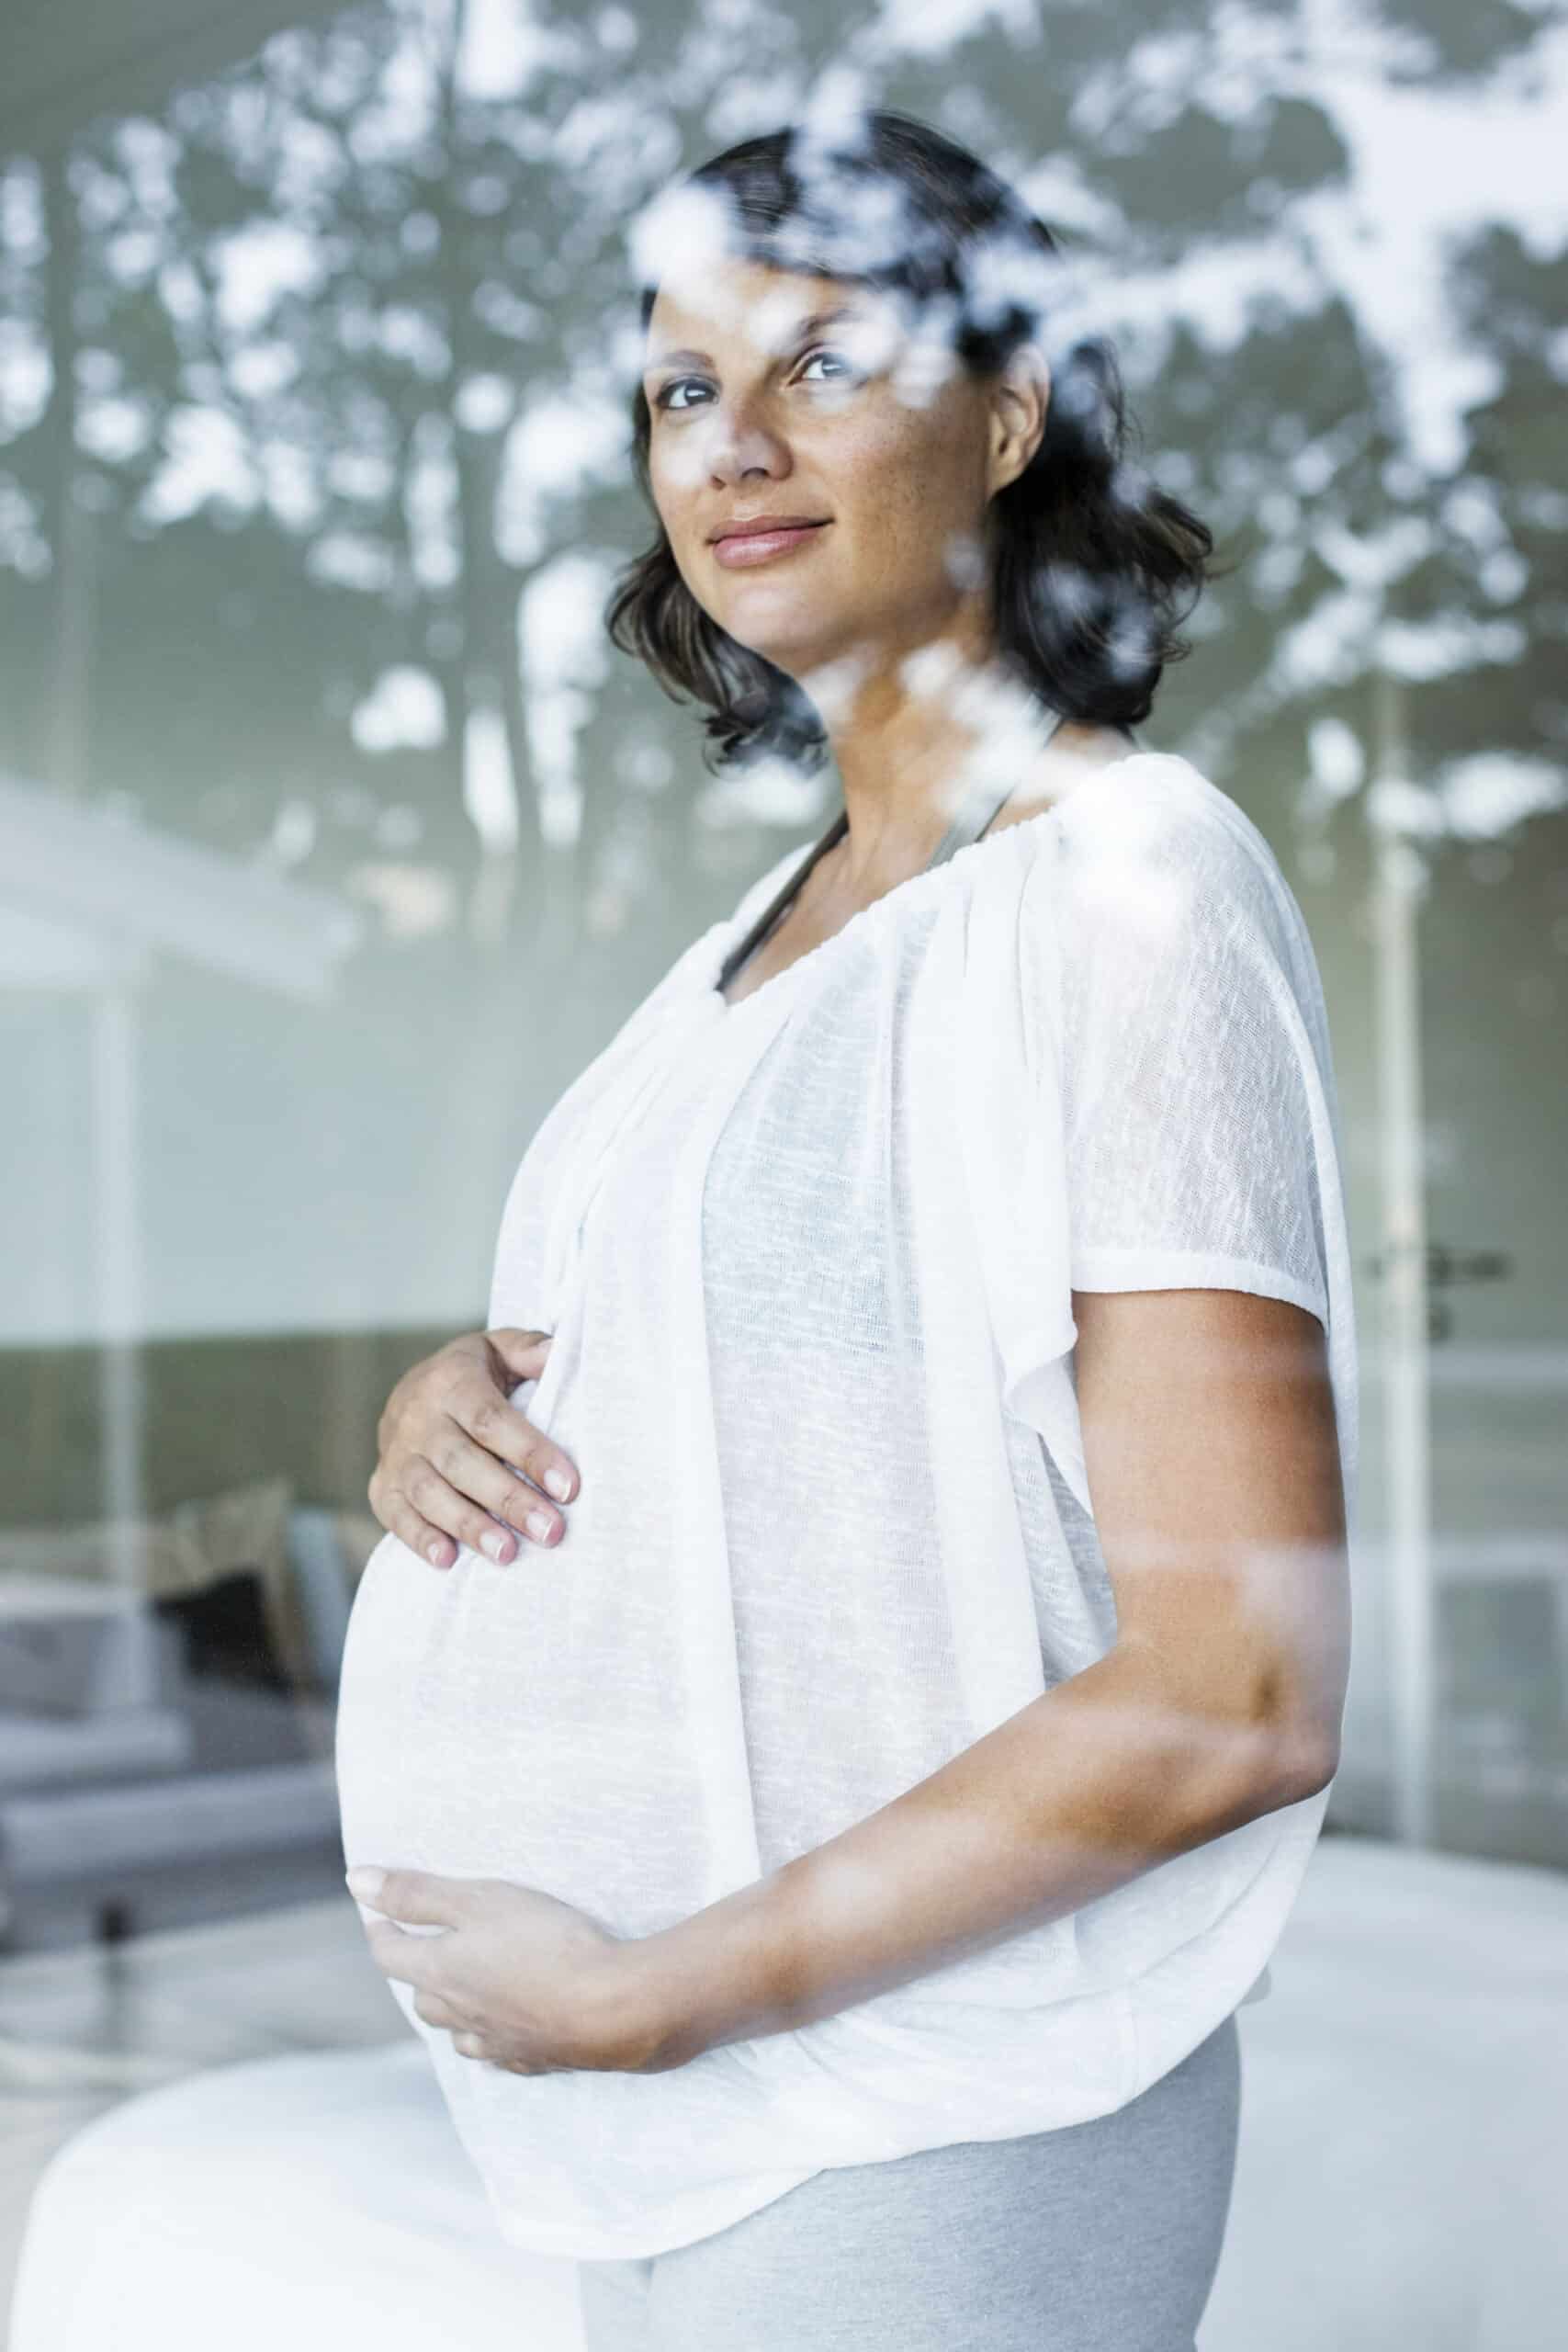 Eine schwangere Frau in einer weißen Bluse steht drinnen und blickt aus einem Fenster mit spiegelnder Oberfläche. Sie hält sanft ihren Bauch und sieht nachdenklich und gelassen aus. © Fotografie Tomas Rodriguez